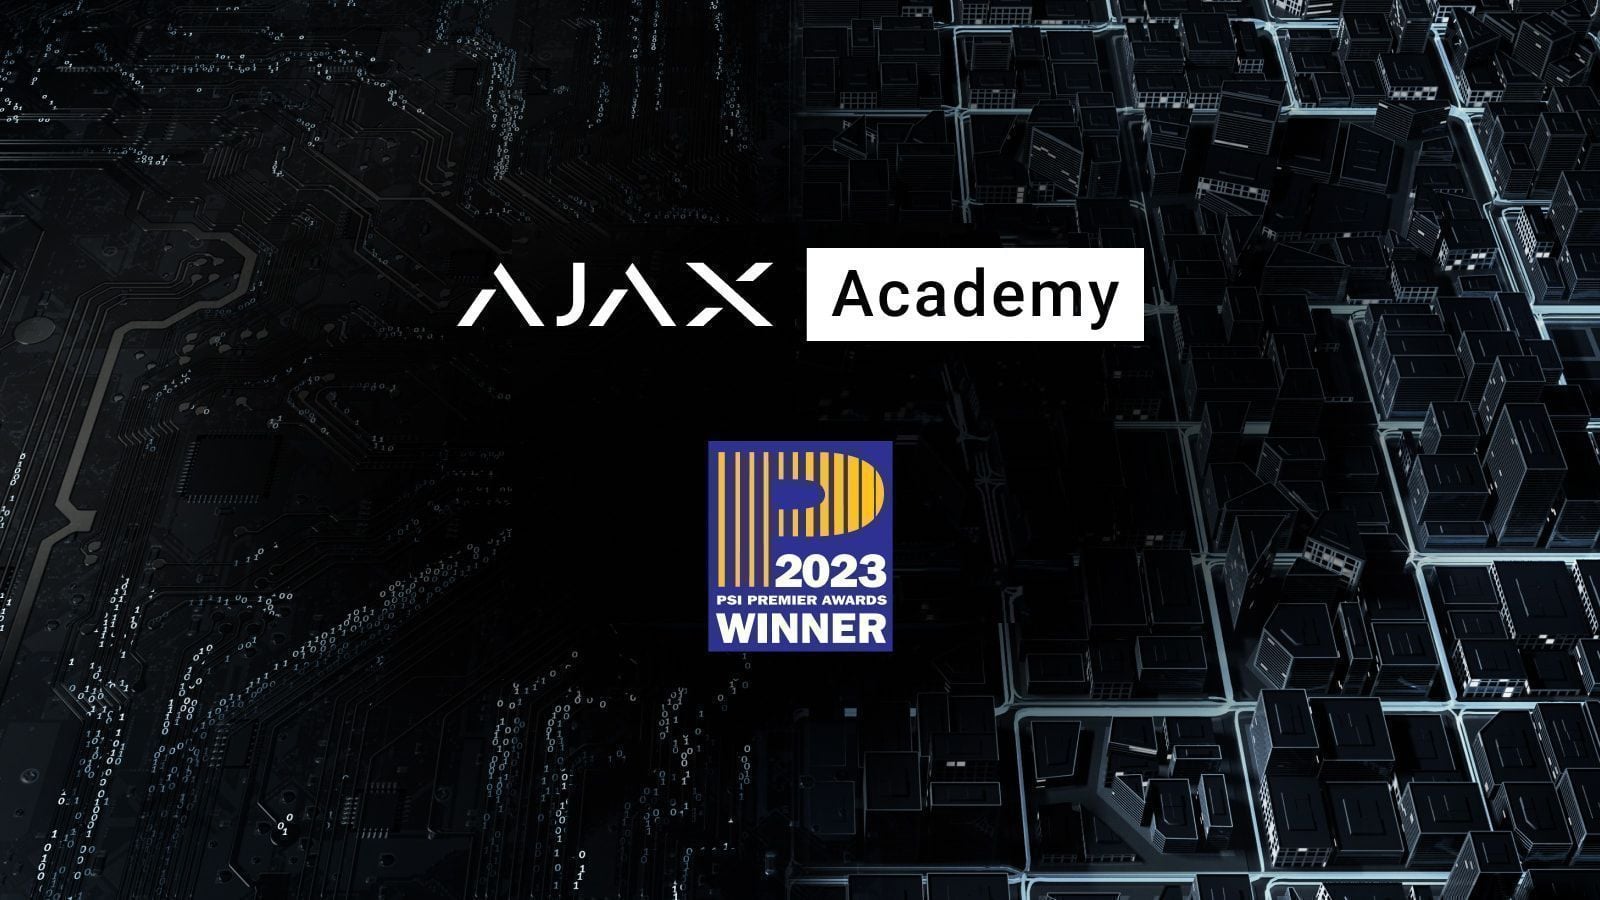 A Ajax Academy ganha nos PSI Premier Awards 2023 como Programa de Formação de Fabricante do Ano